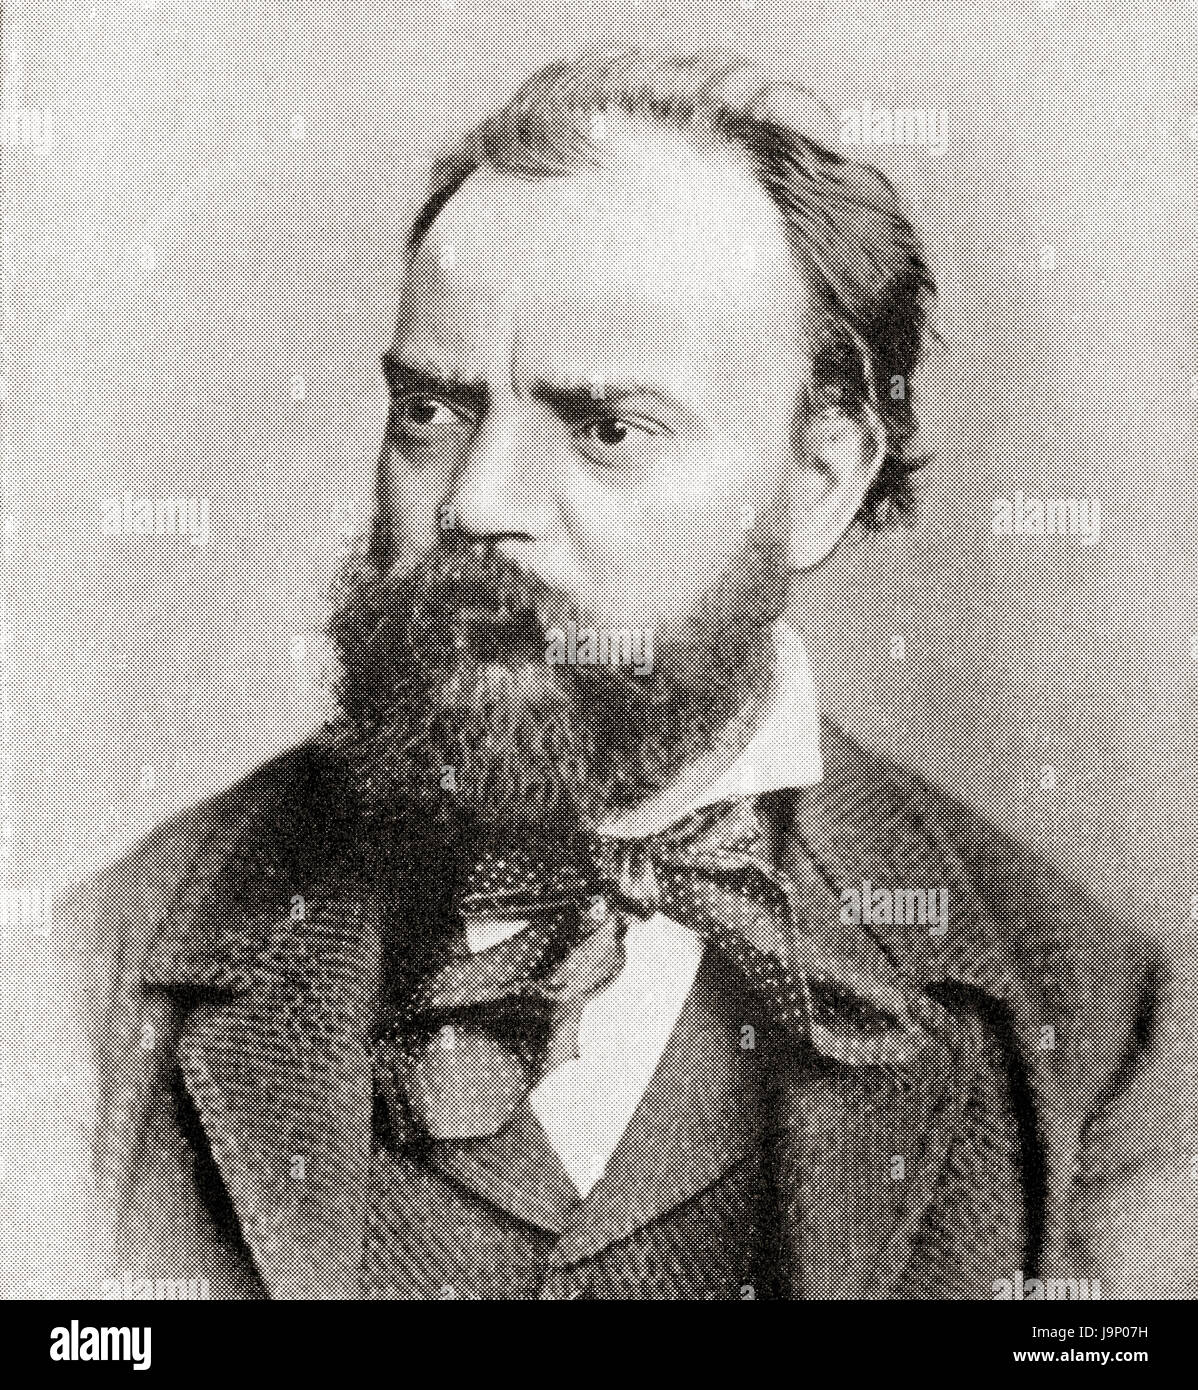 Antonín Leopold Dvořák, 1841 – 1904.  Tschechischer Komponist.  Hutchinson Geschichte der Nationen veröffentlichte 1915. Stockfoto